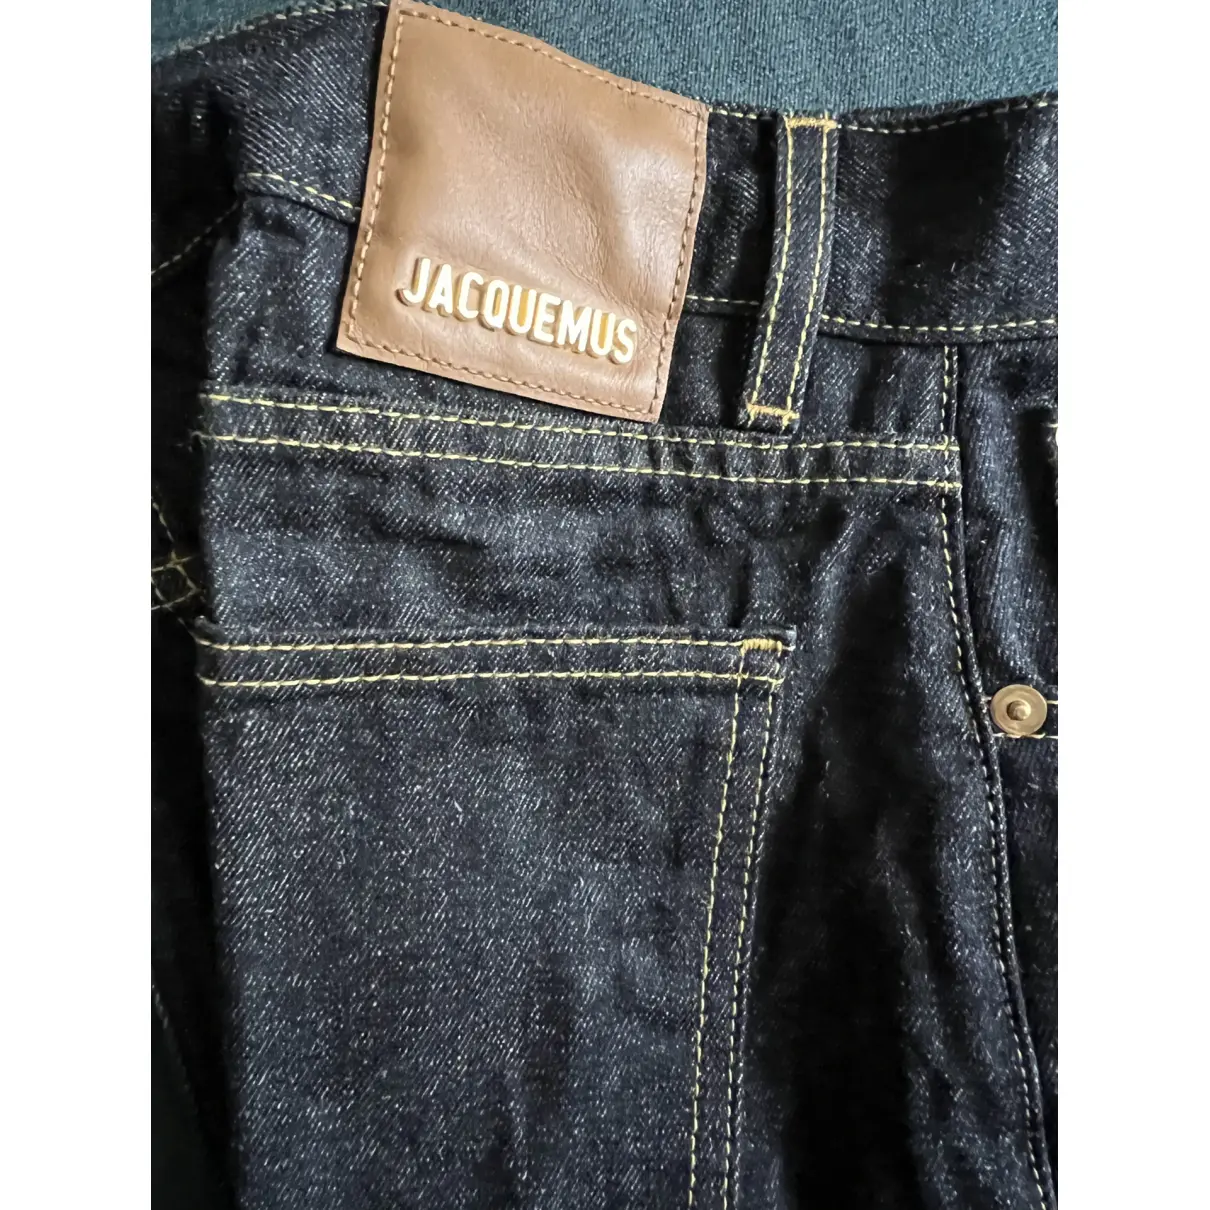 Large jeans Jacquemus